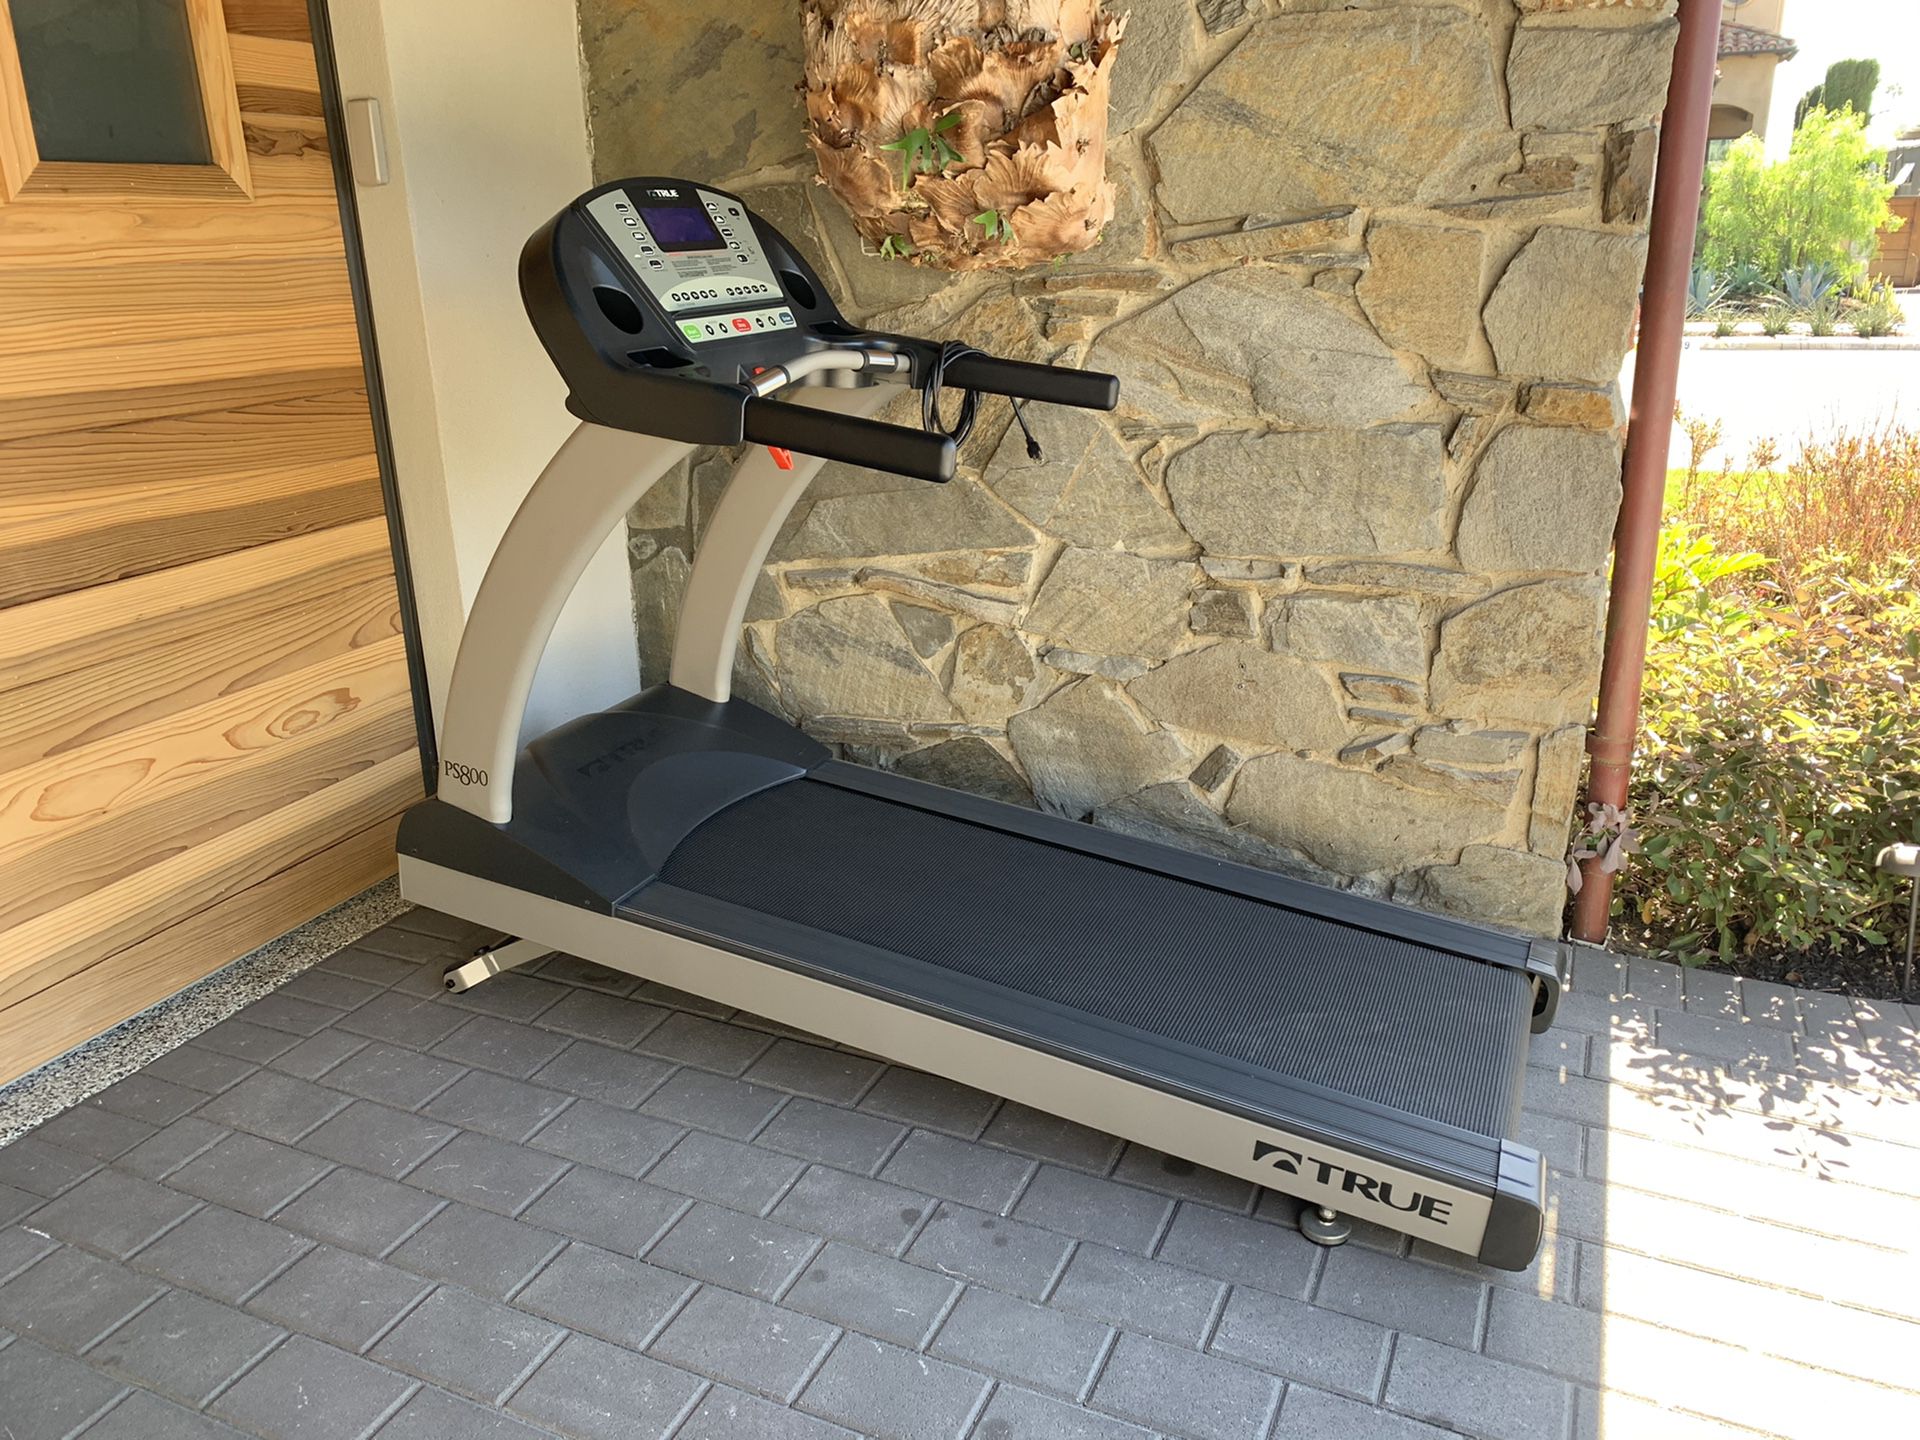 True Treadmill model PS800